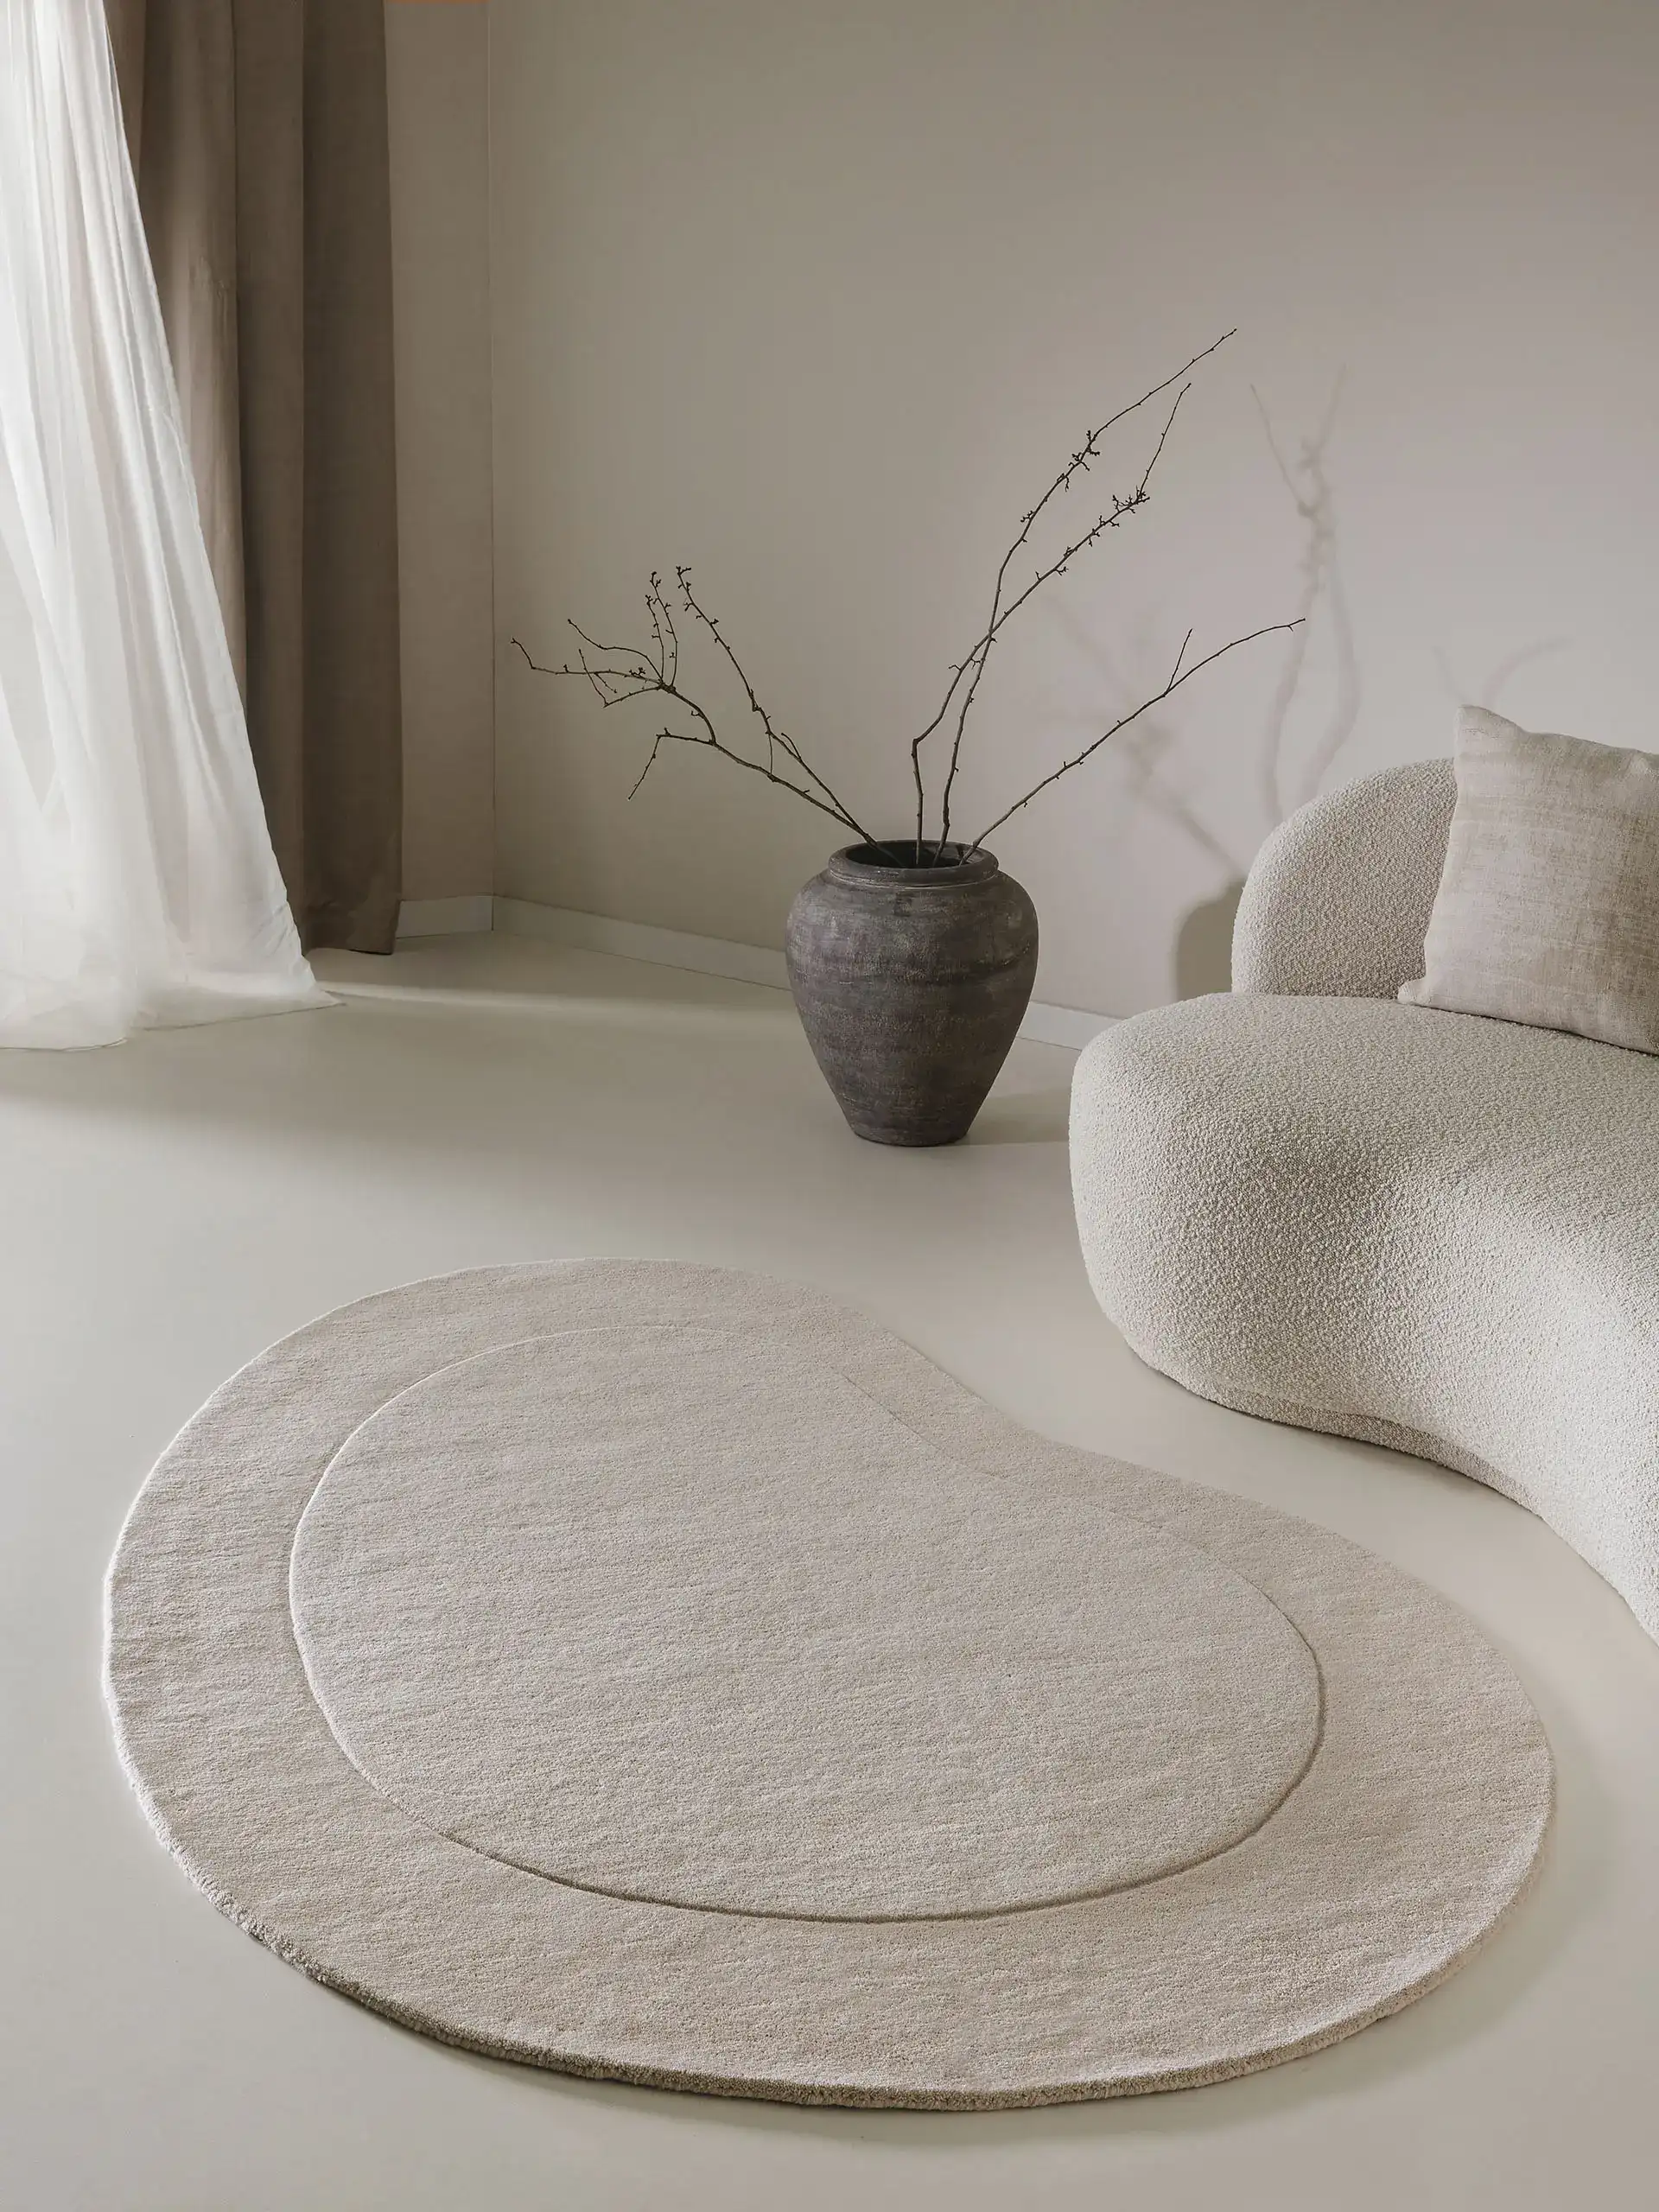 Organischer, kleiner Teppich für die Fußbodenheizung in einem luxuriösen Wohnzimmer mit Couch in S-Form